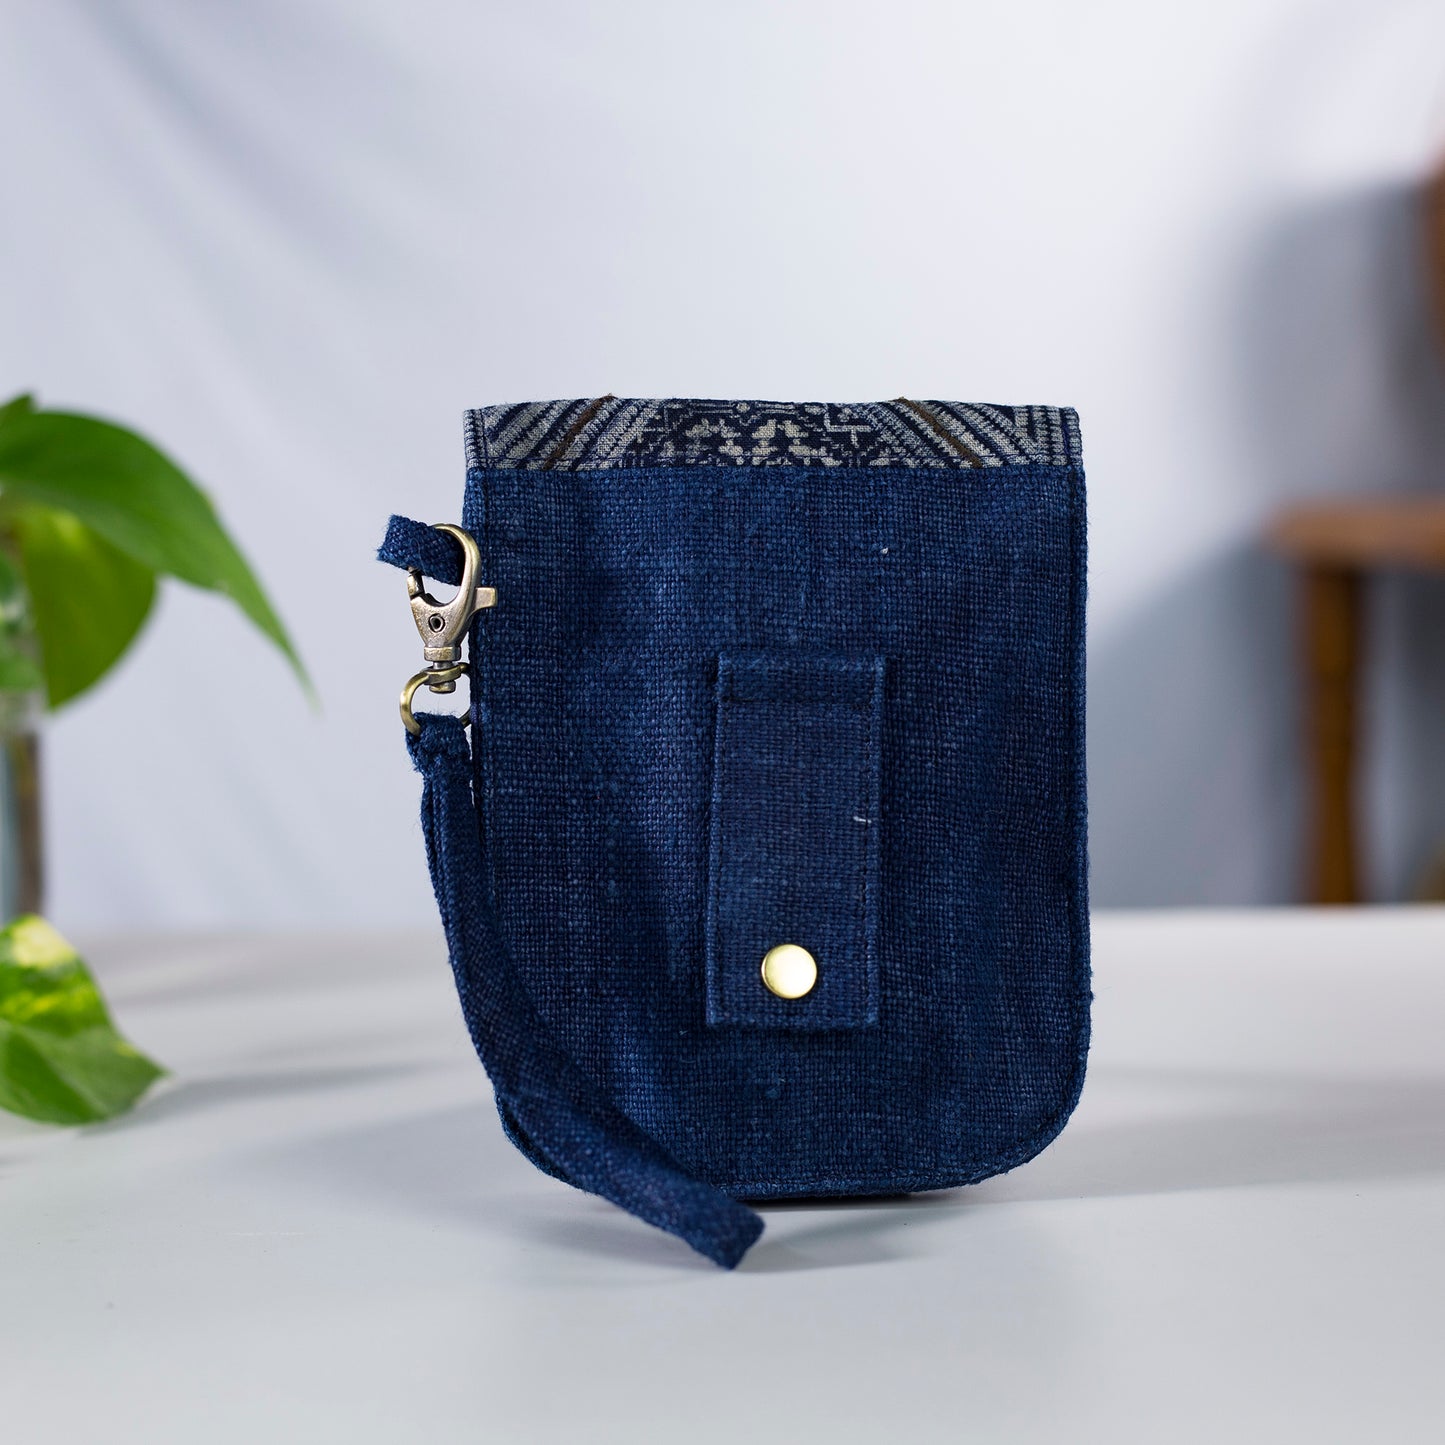 Flip-telefonbältesväska, handledsväska alternativ, naturlig hampa i INDIGO BLÅ färg